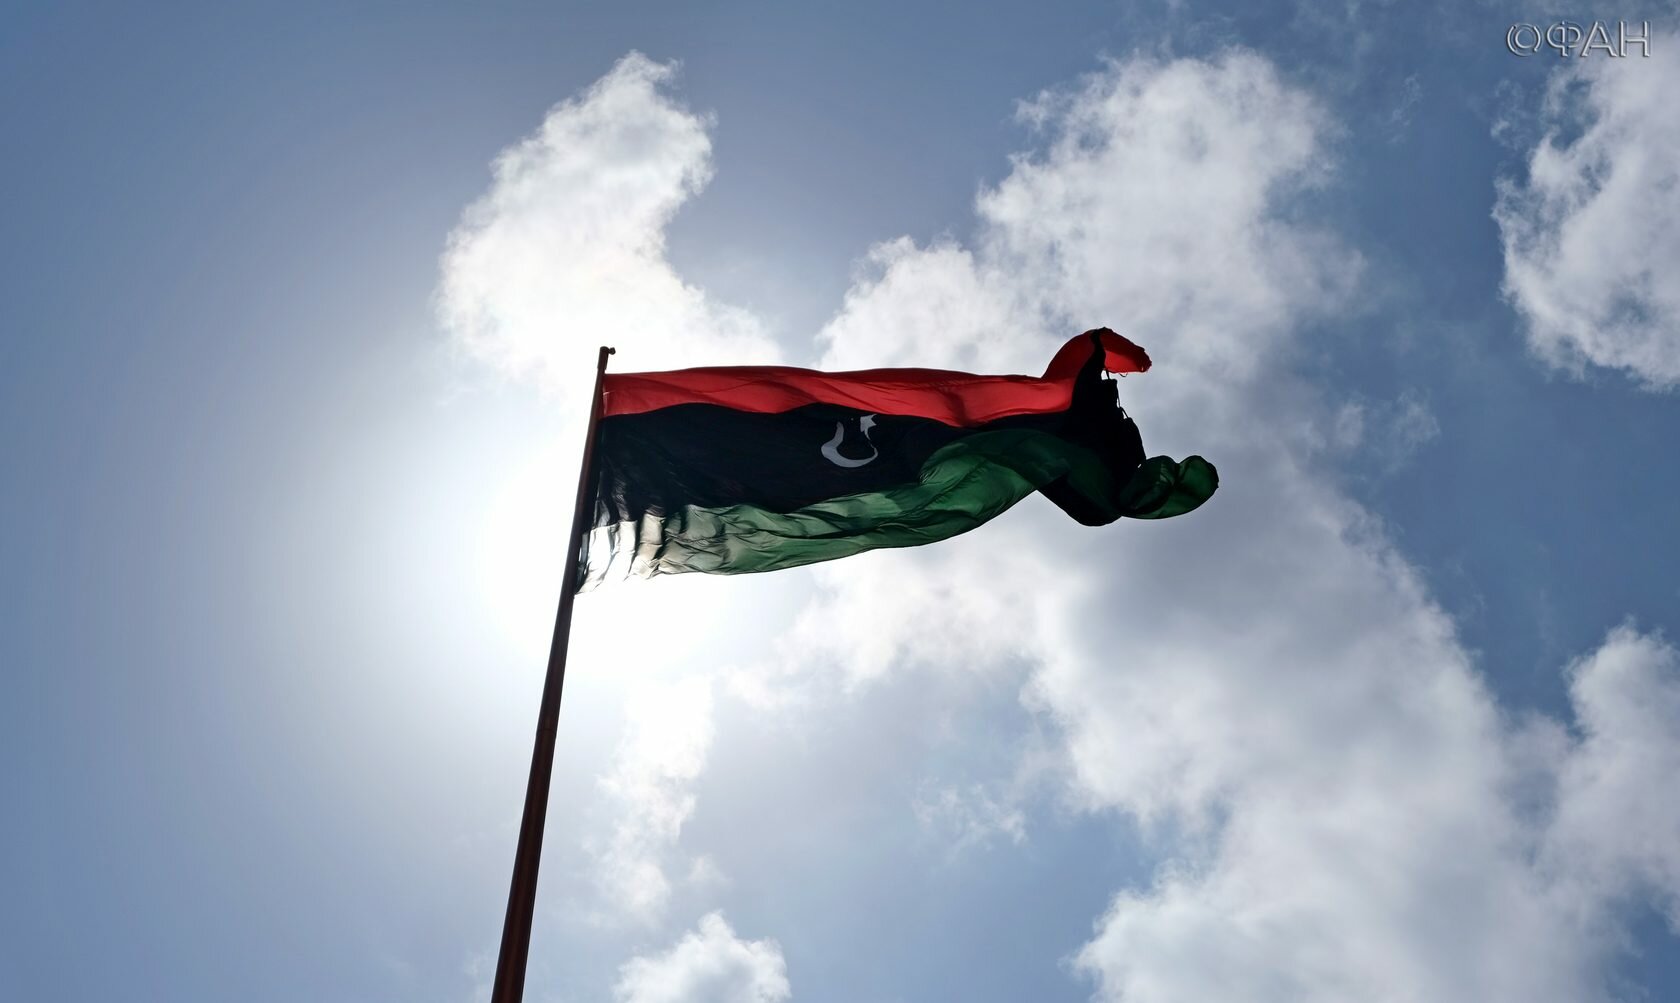 Пособники терроризма: ливийские власти тратят народные деньги не по назначению